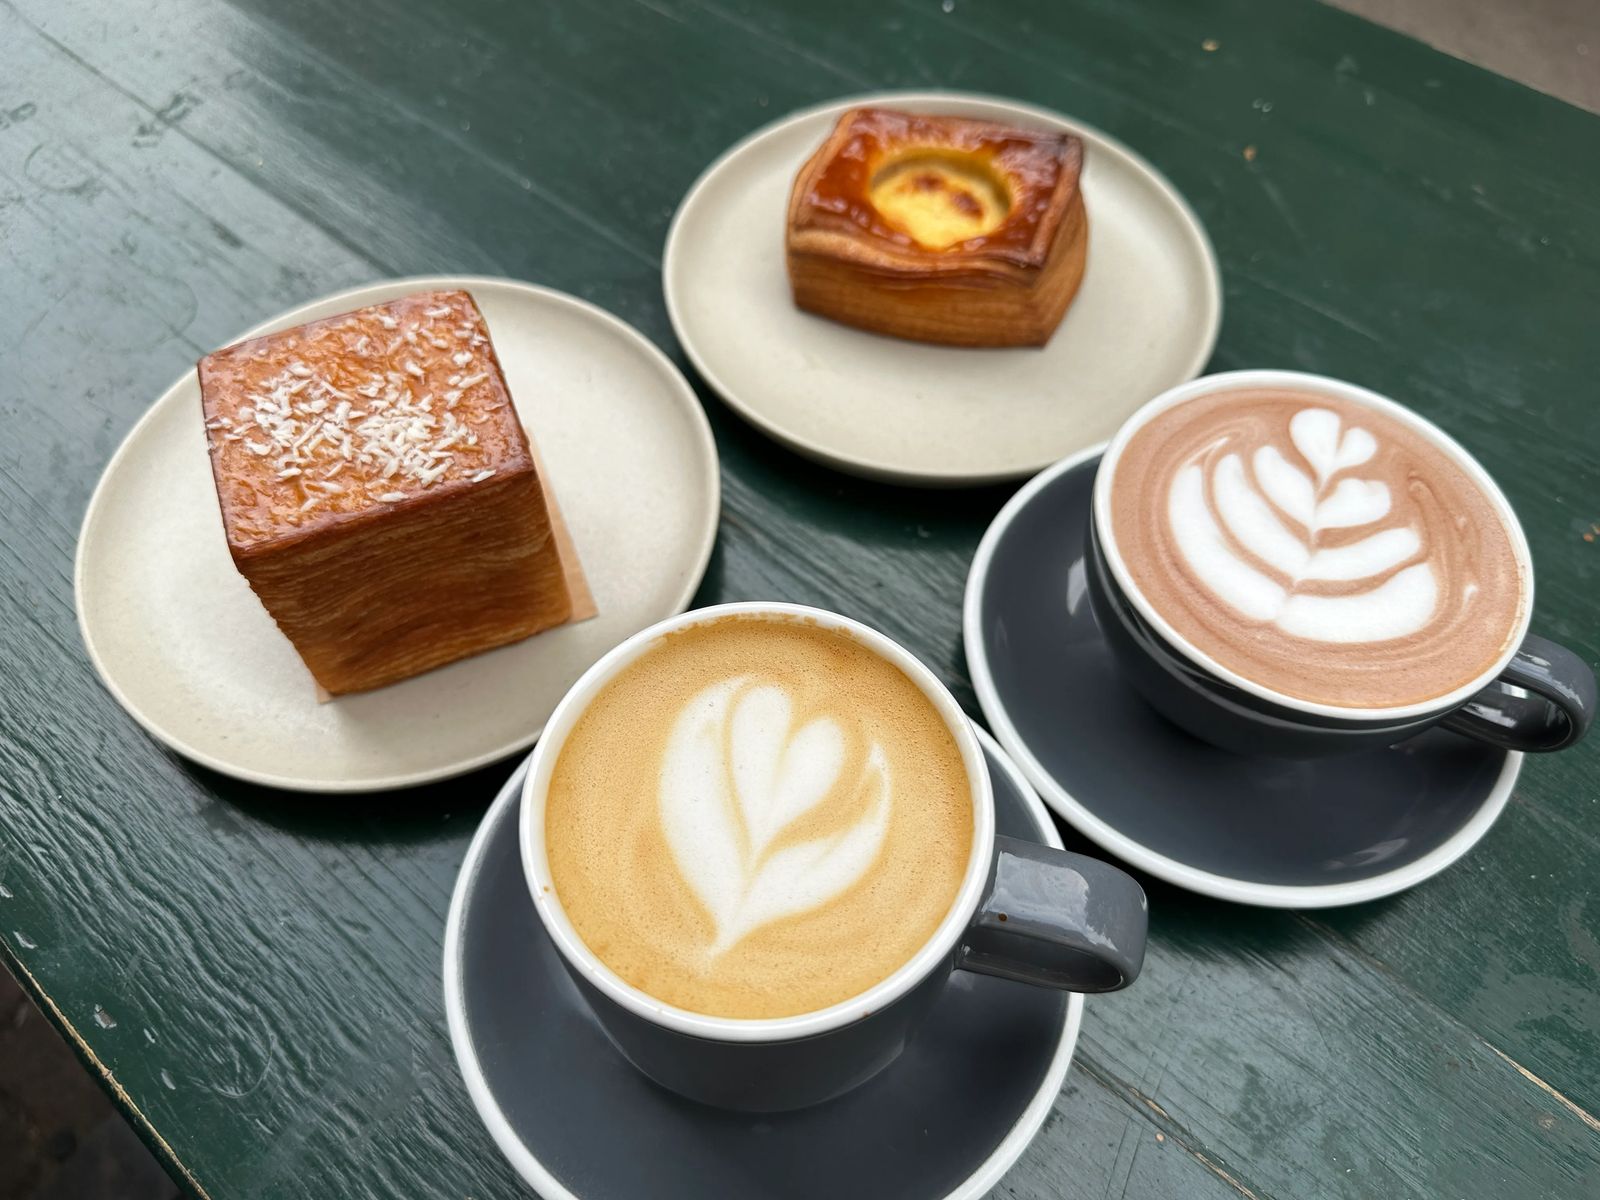 Best Danish Pastry Shops In Copenhagen